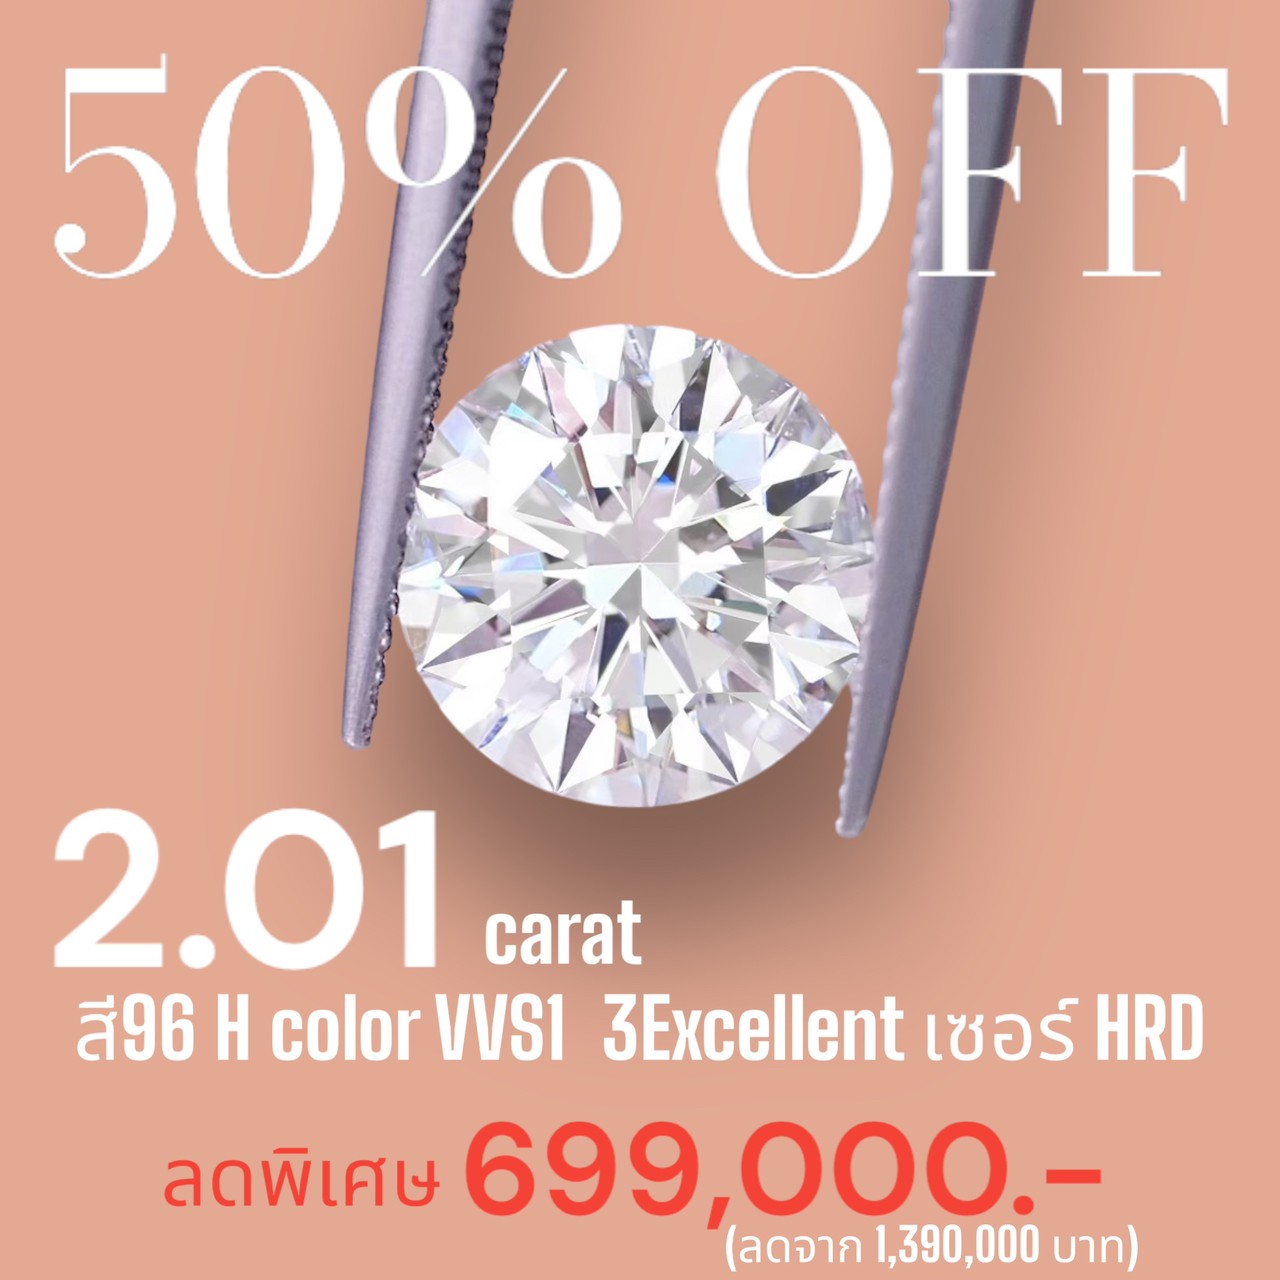 [27282] 2.01 carat H color VVS1 3EX HRD Discount 699,000